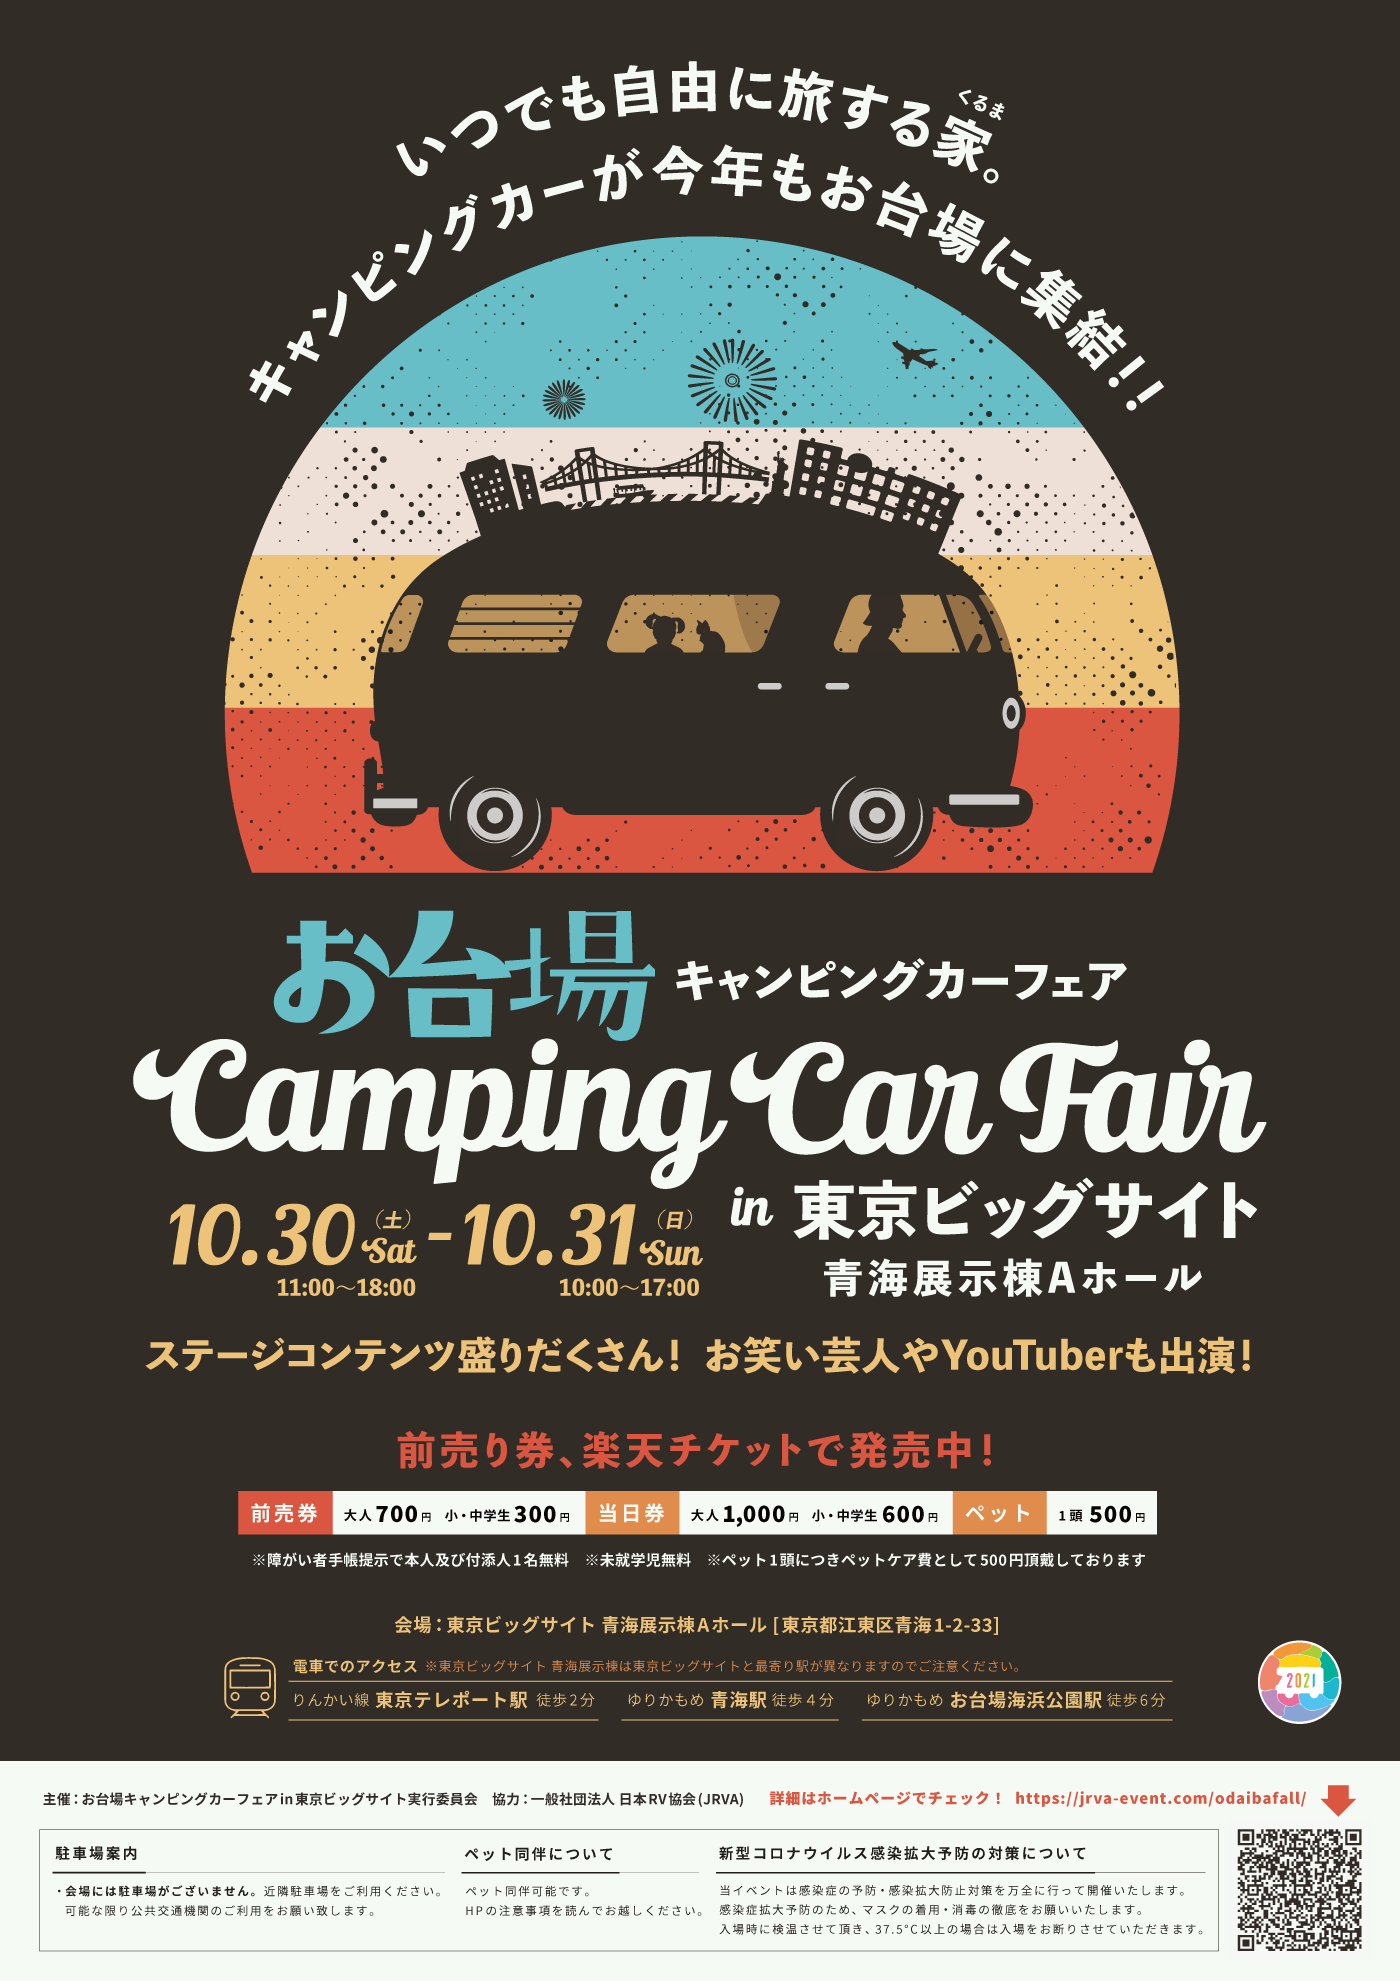 日本RV協会特別協賛の大型キャンピングカーイベントのお台場キャンピングカーフェア2021にコンパスビッツ、ベルランゴキャンパー、エスコートで参加いたします